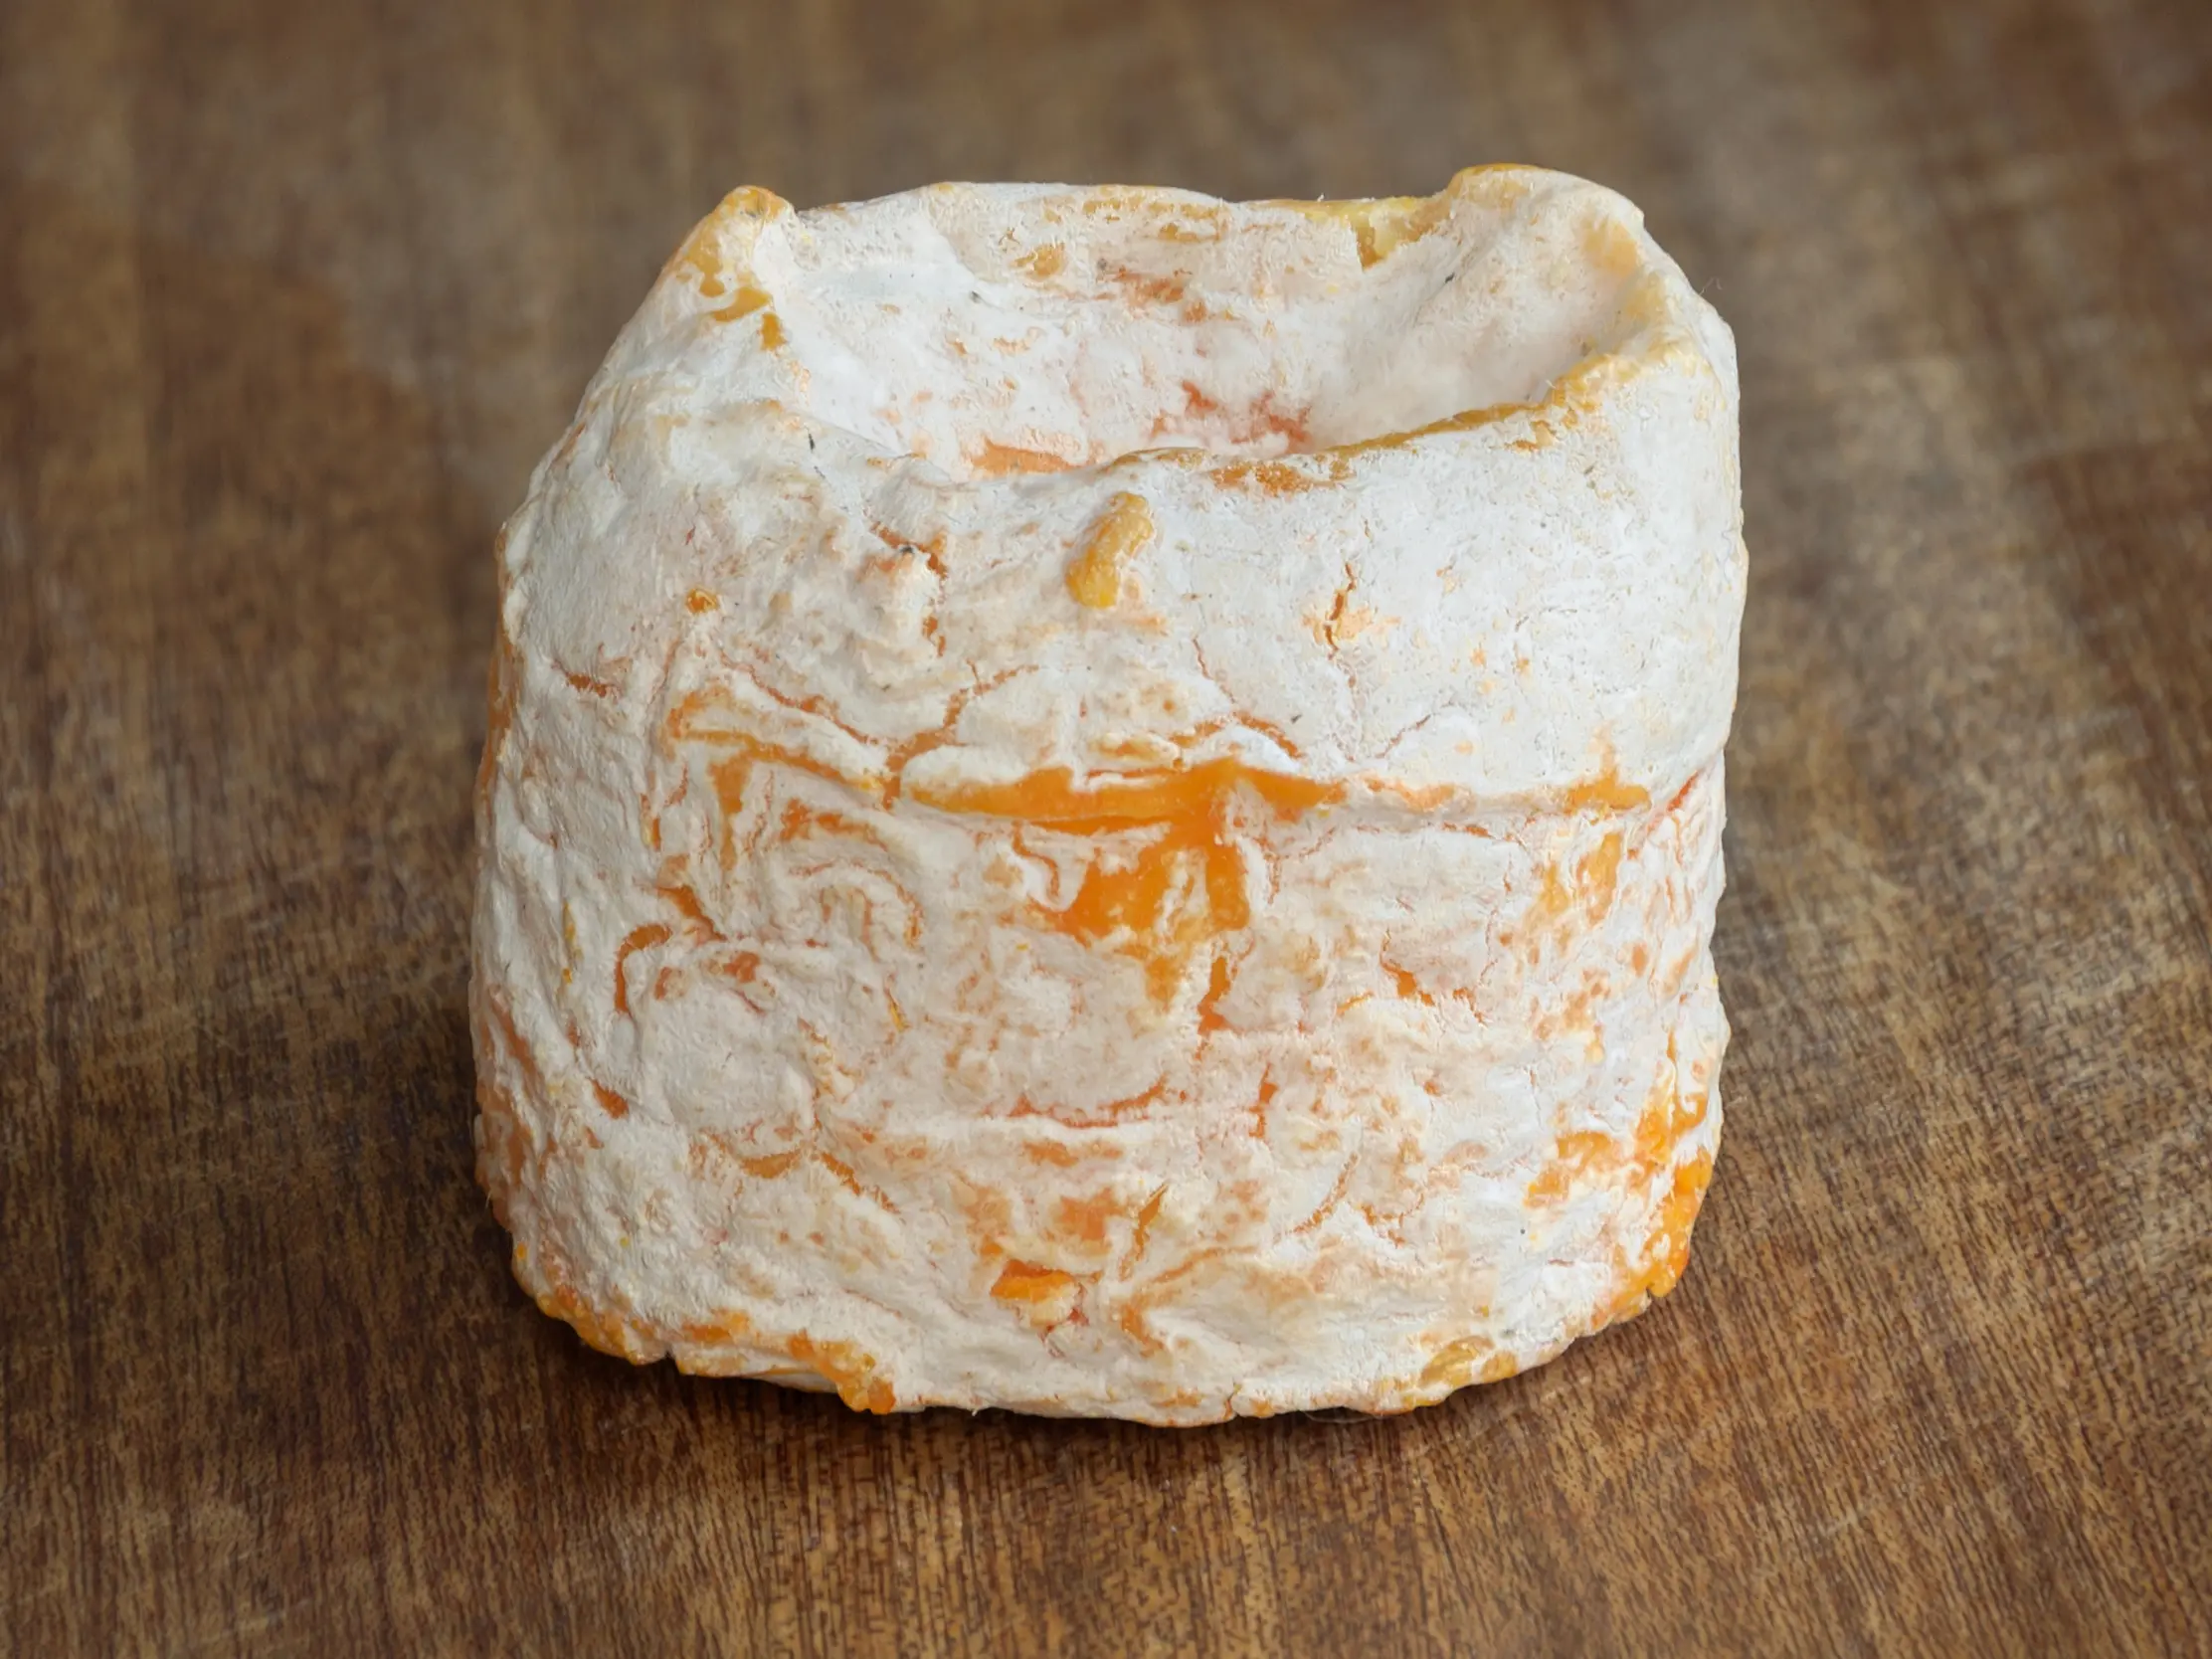 queso langres como se come - Cómo se come el queso Langres